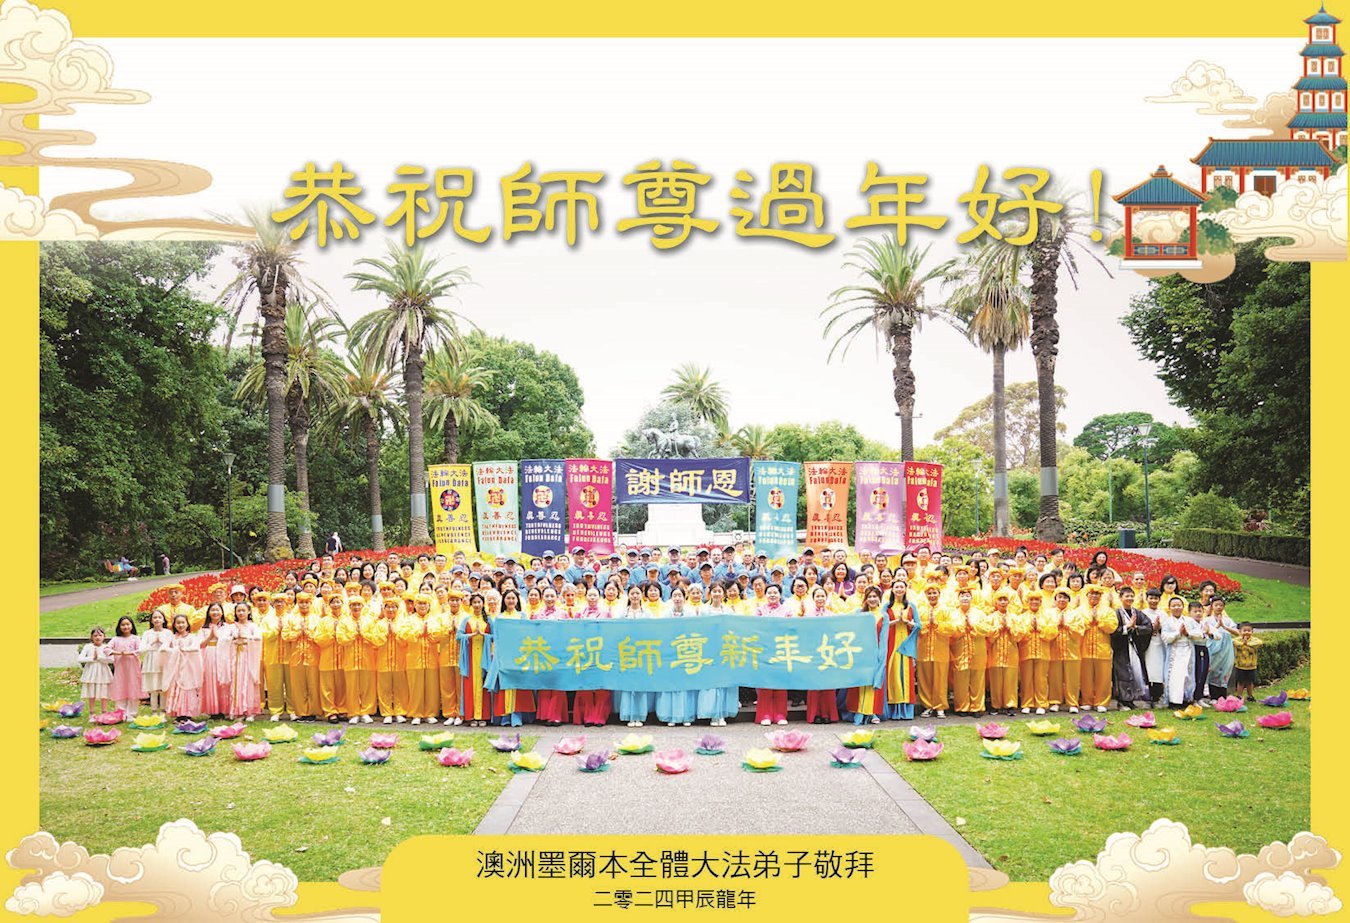 Image for article Praticanti di 57 paesi e regioni augurano al Maestro Li un felice Capodanno cinese